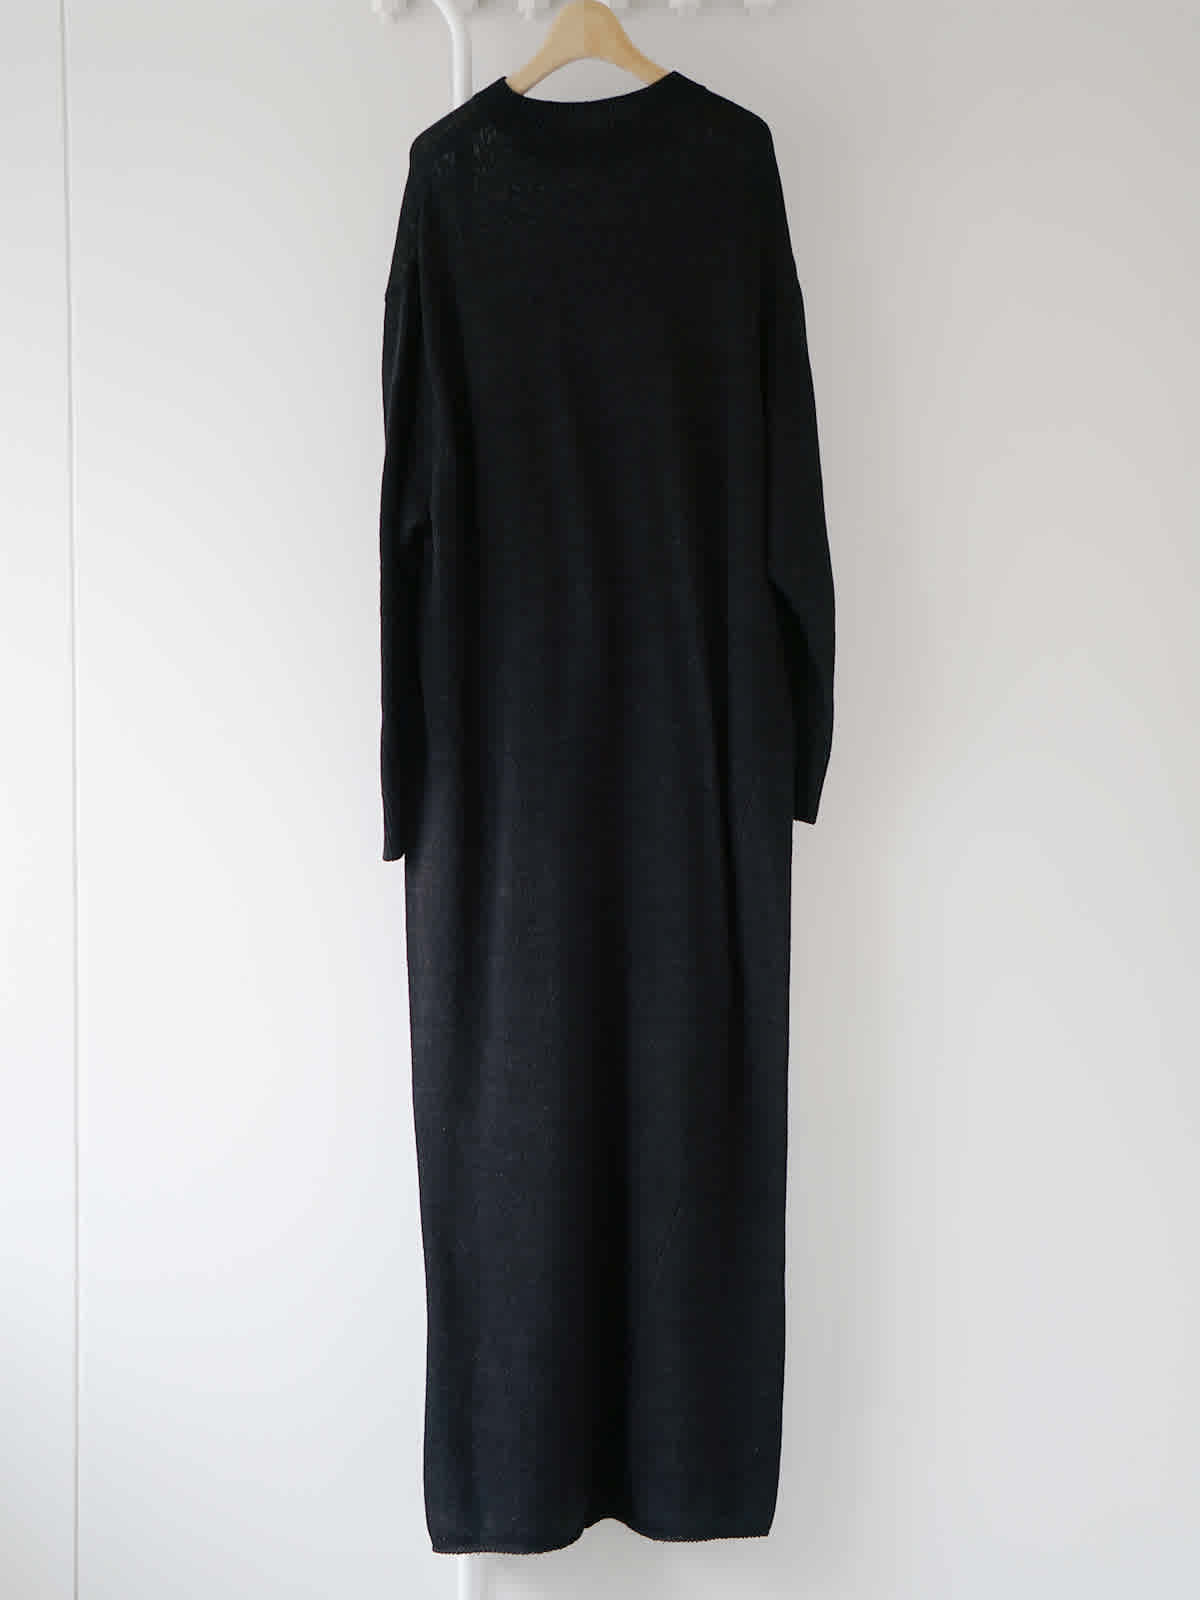 black knit dress Z